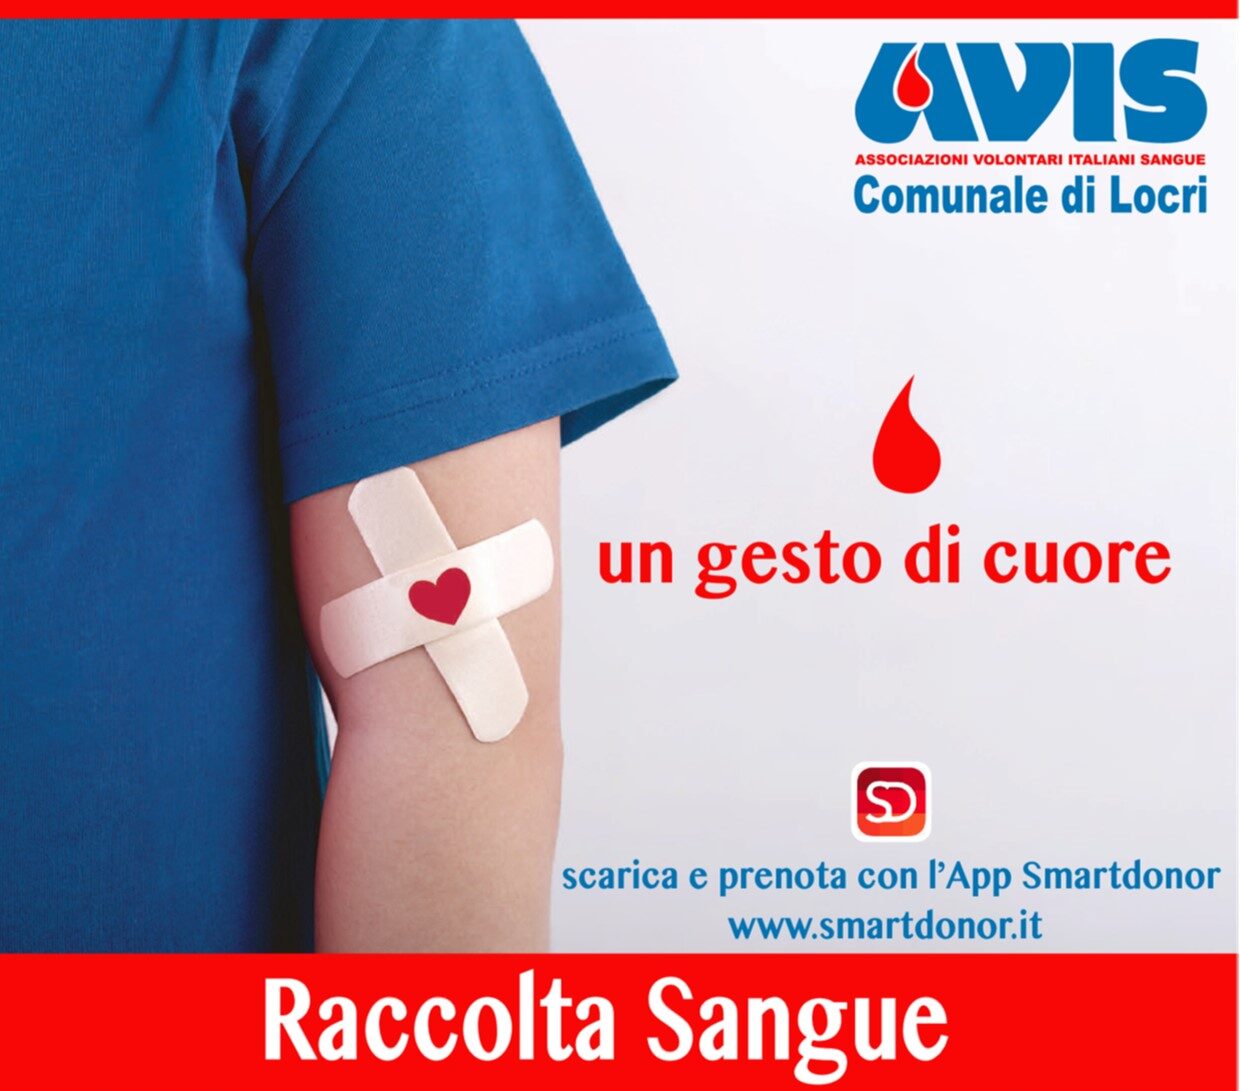 L’AVIS Comunale di Locri comunica le date delle raccolte di sangue per il mese di marzo 2023